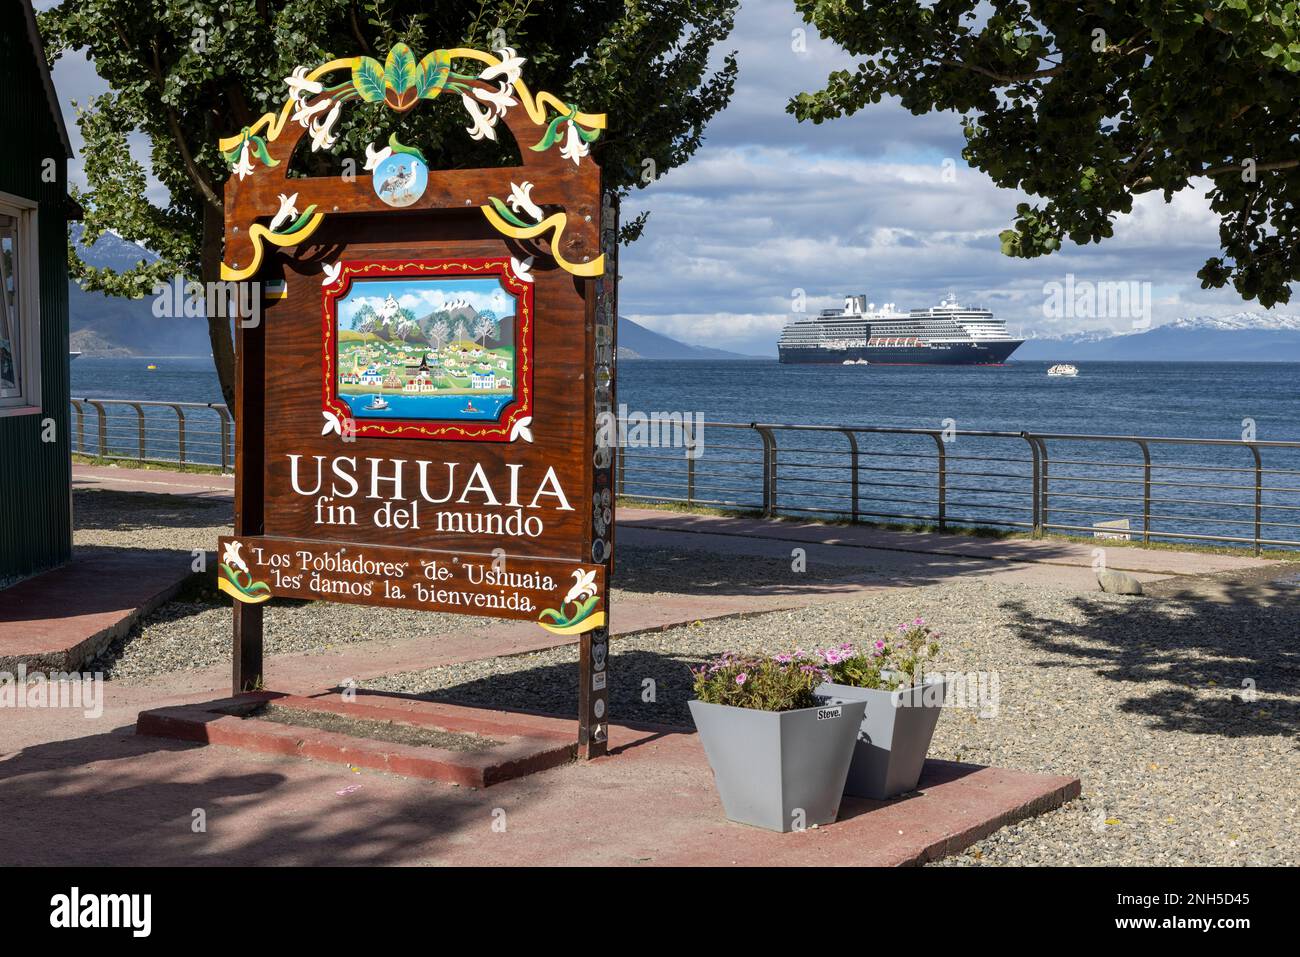 Famoso cartello di benvenuto in legno ornato con scritta "USHUAIA fin del mundo" nel porto di Ushuaia, Tierra del Fuego in Argentina, Sud America Foto Stock